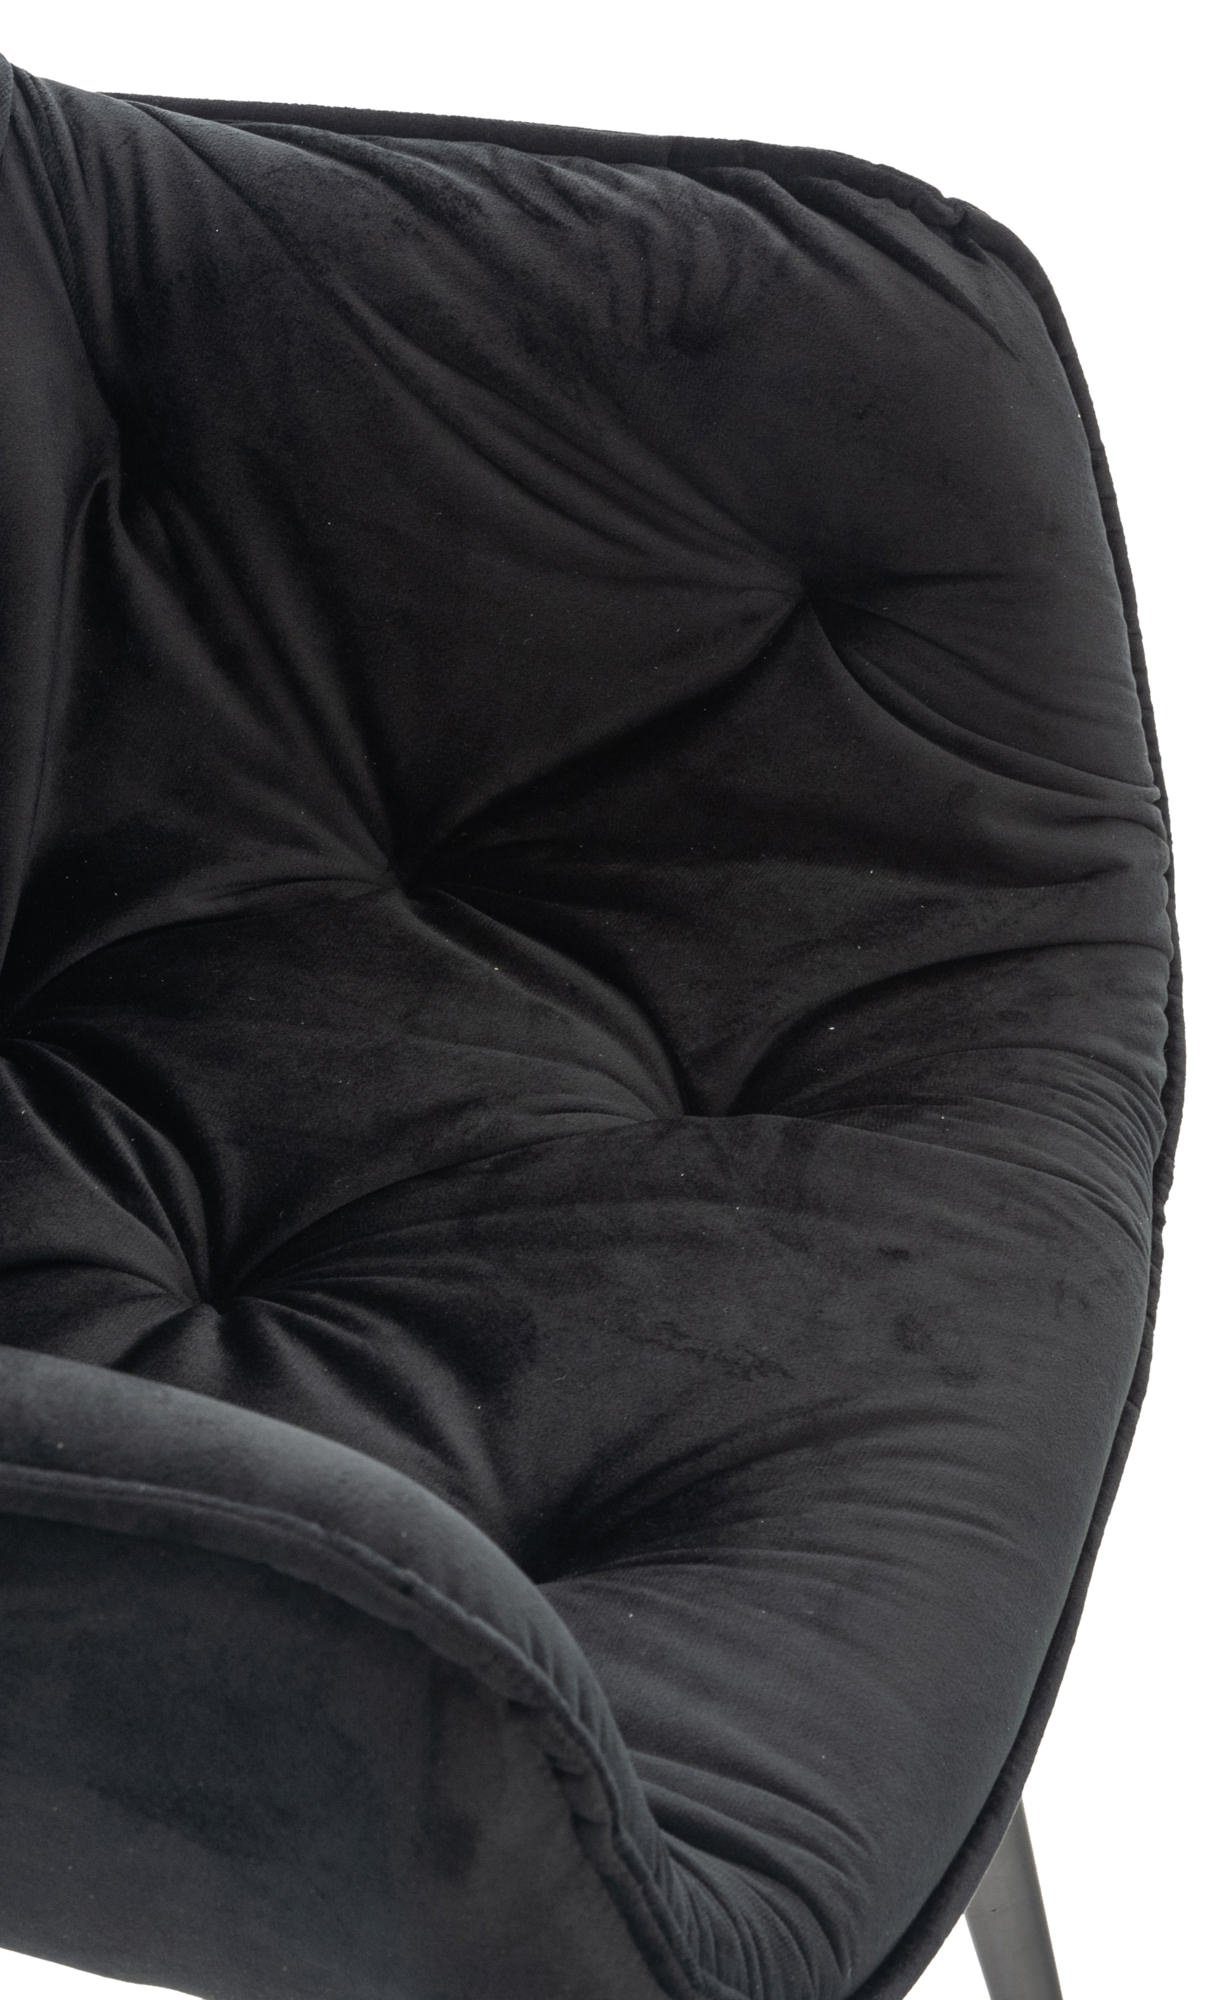 Tanna 4-Fuß-Stuhl, Samt, Armlehnen, Esszimmerstuhl CLP Metallgestell schwarz